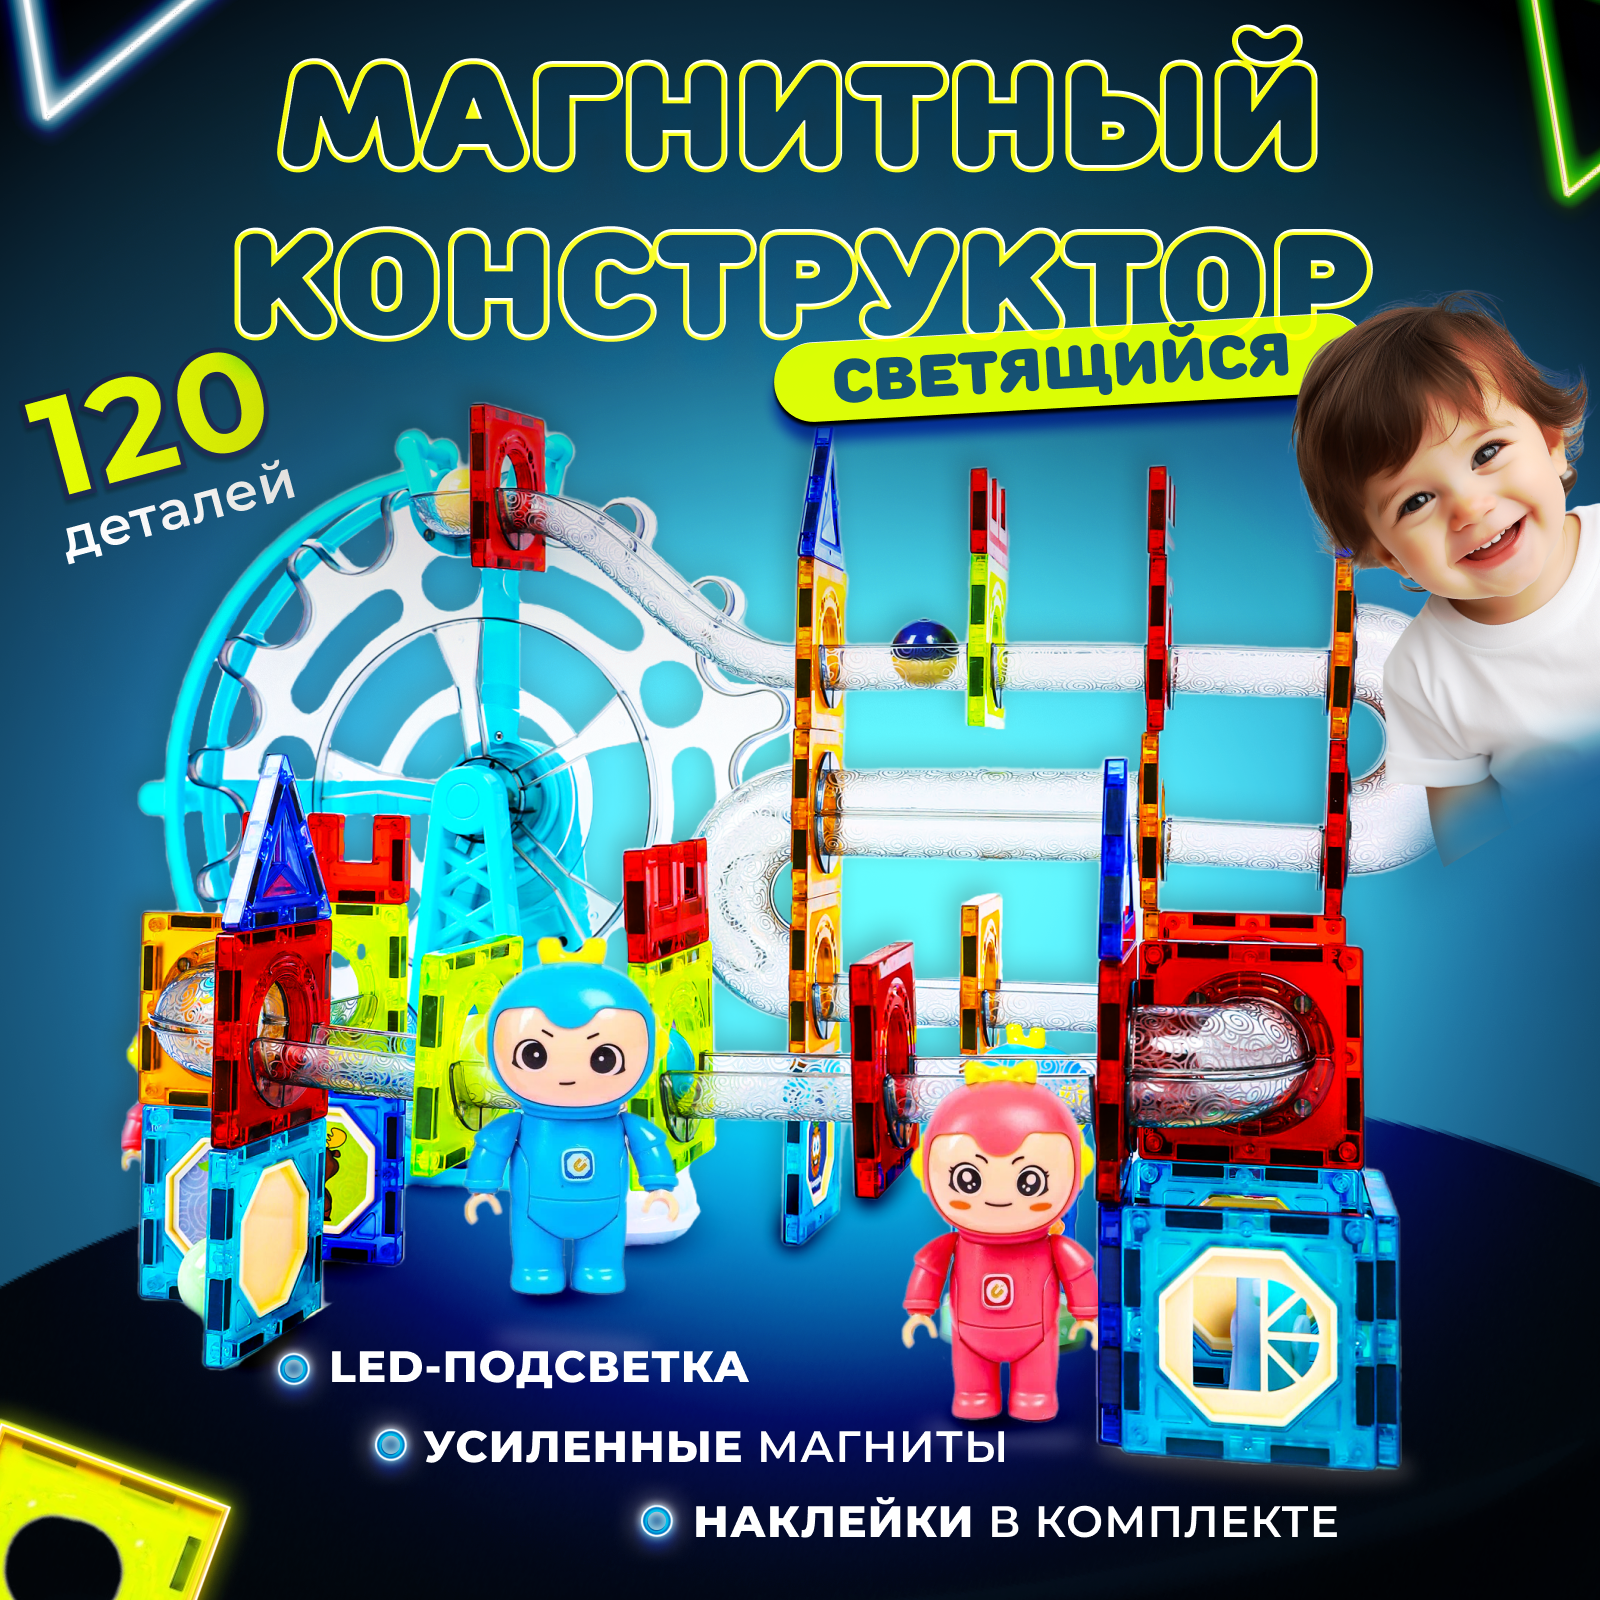 Play Cool / Магнитный конструктор детский 120 деталей / Конструктор светящийся развивающий